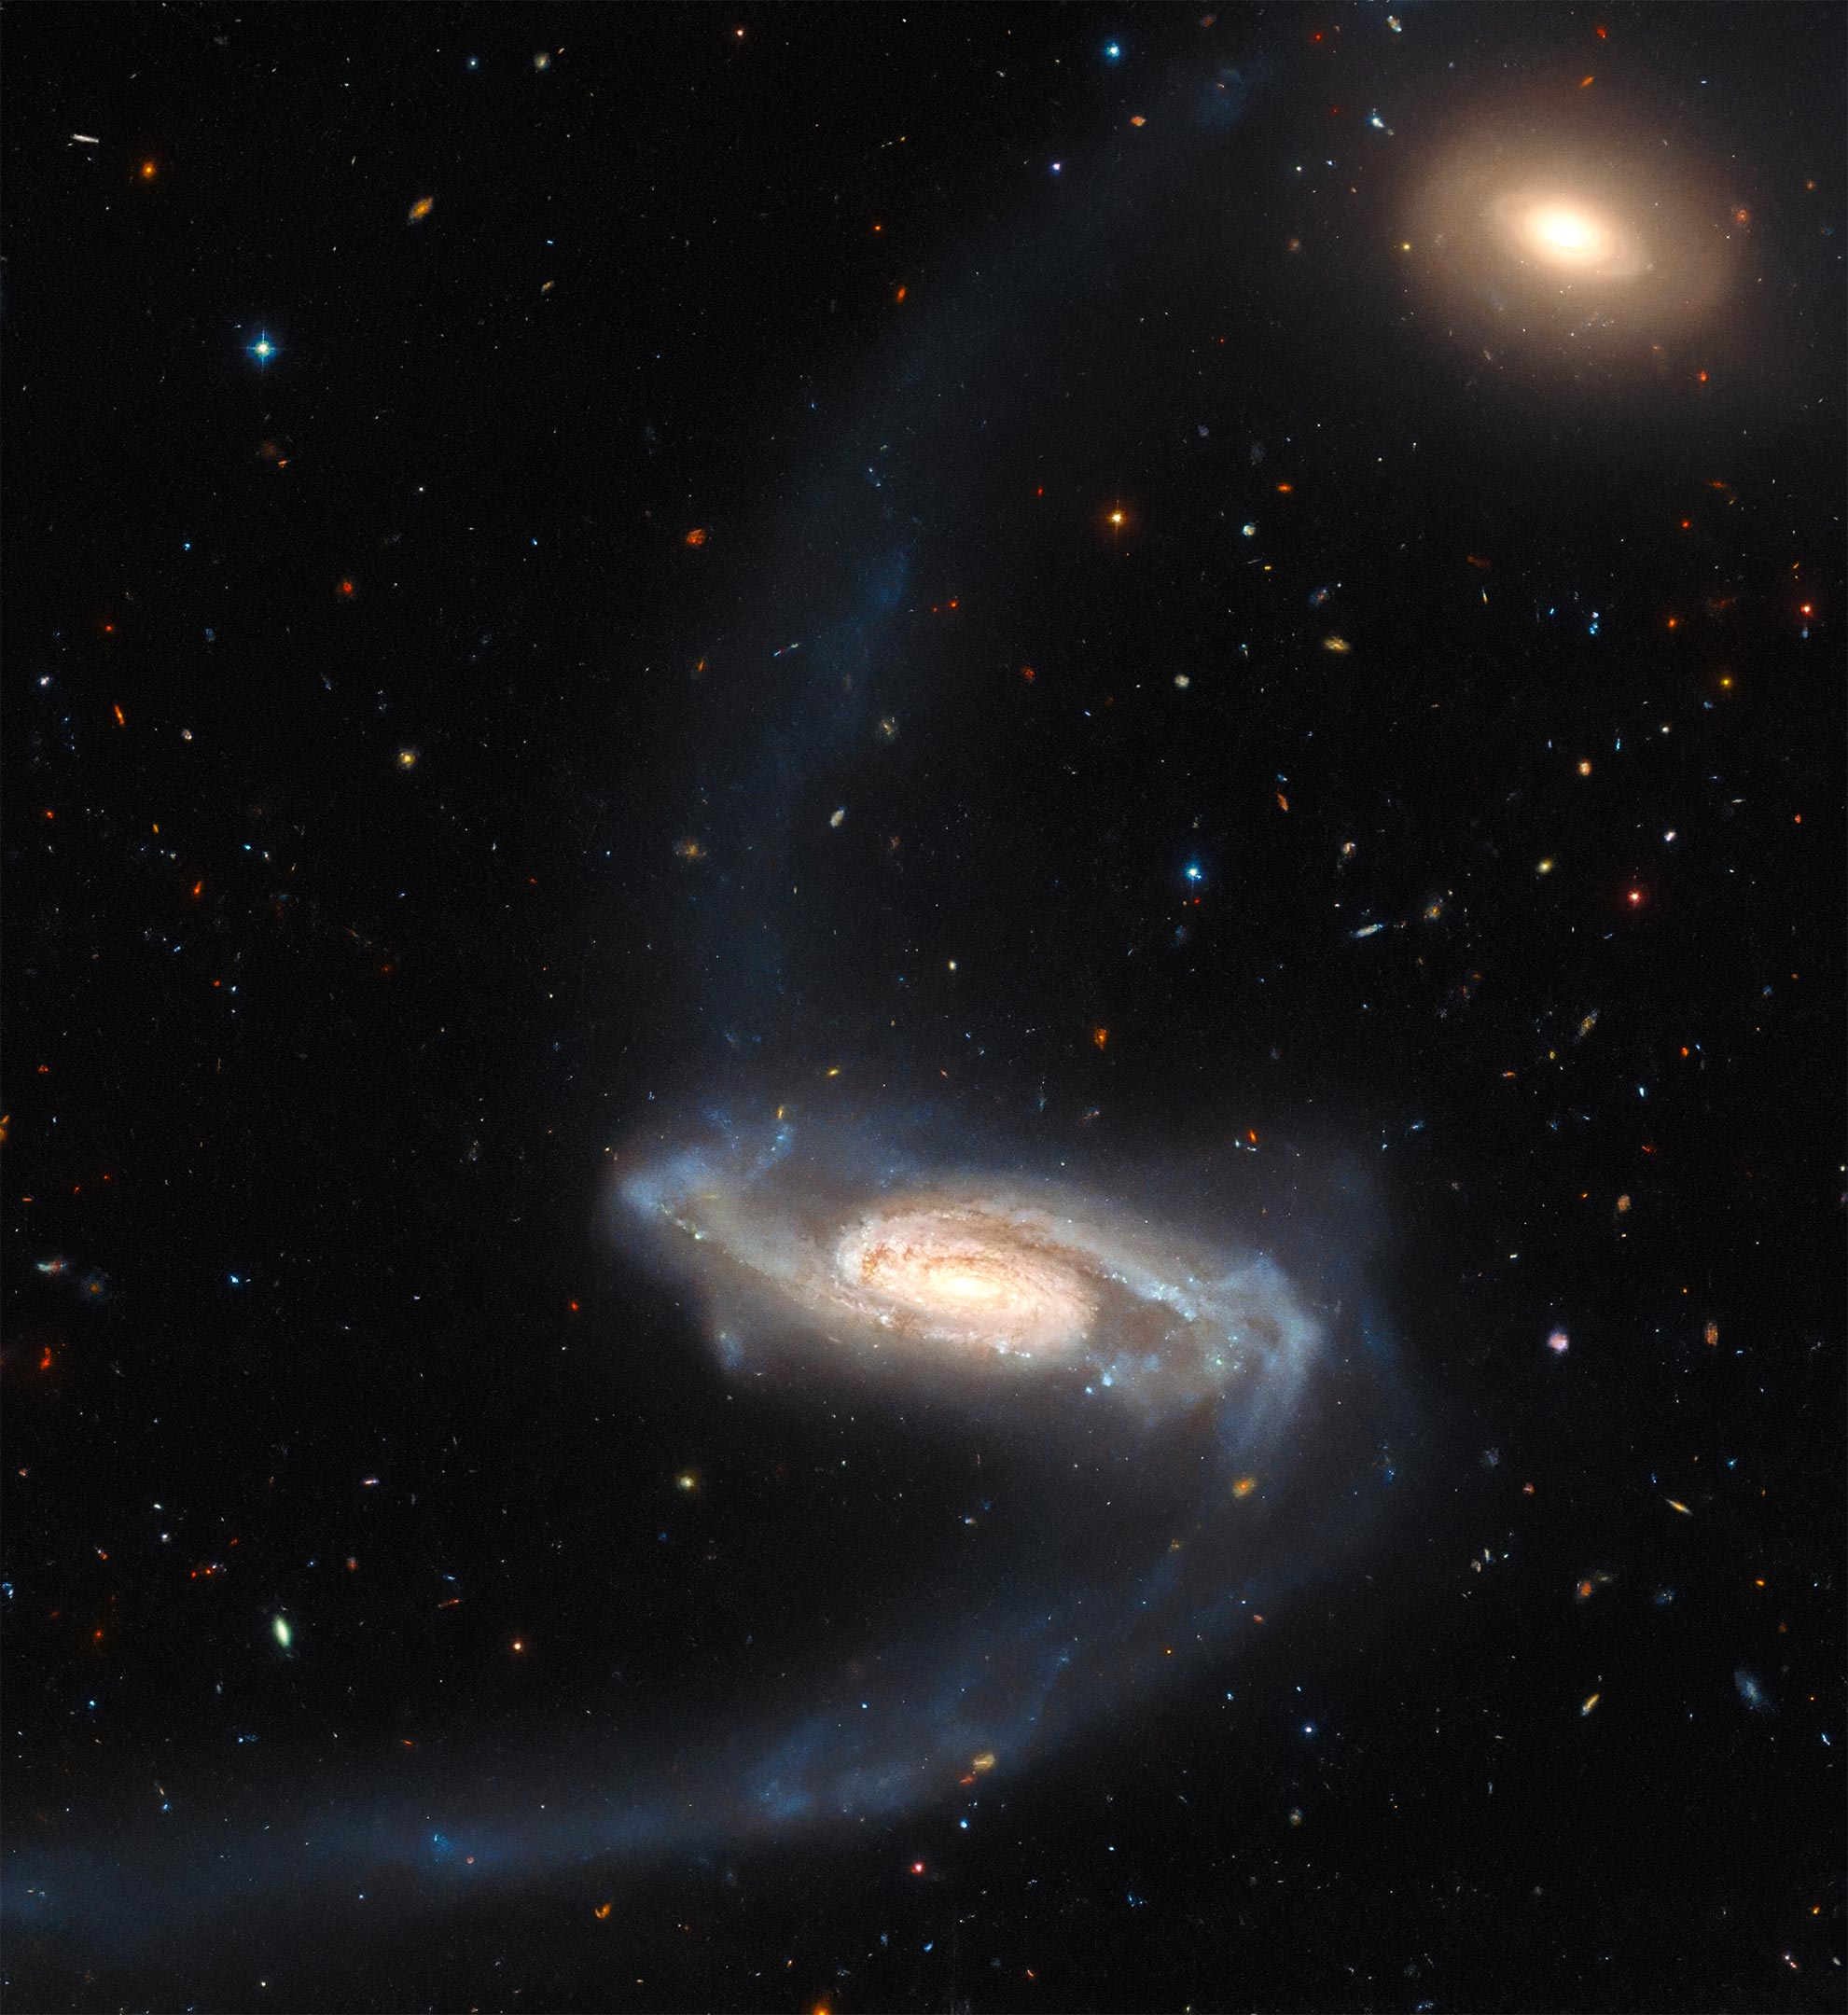 Strange galaxy captured in stunning detail